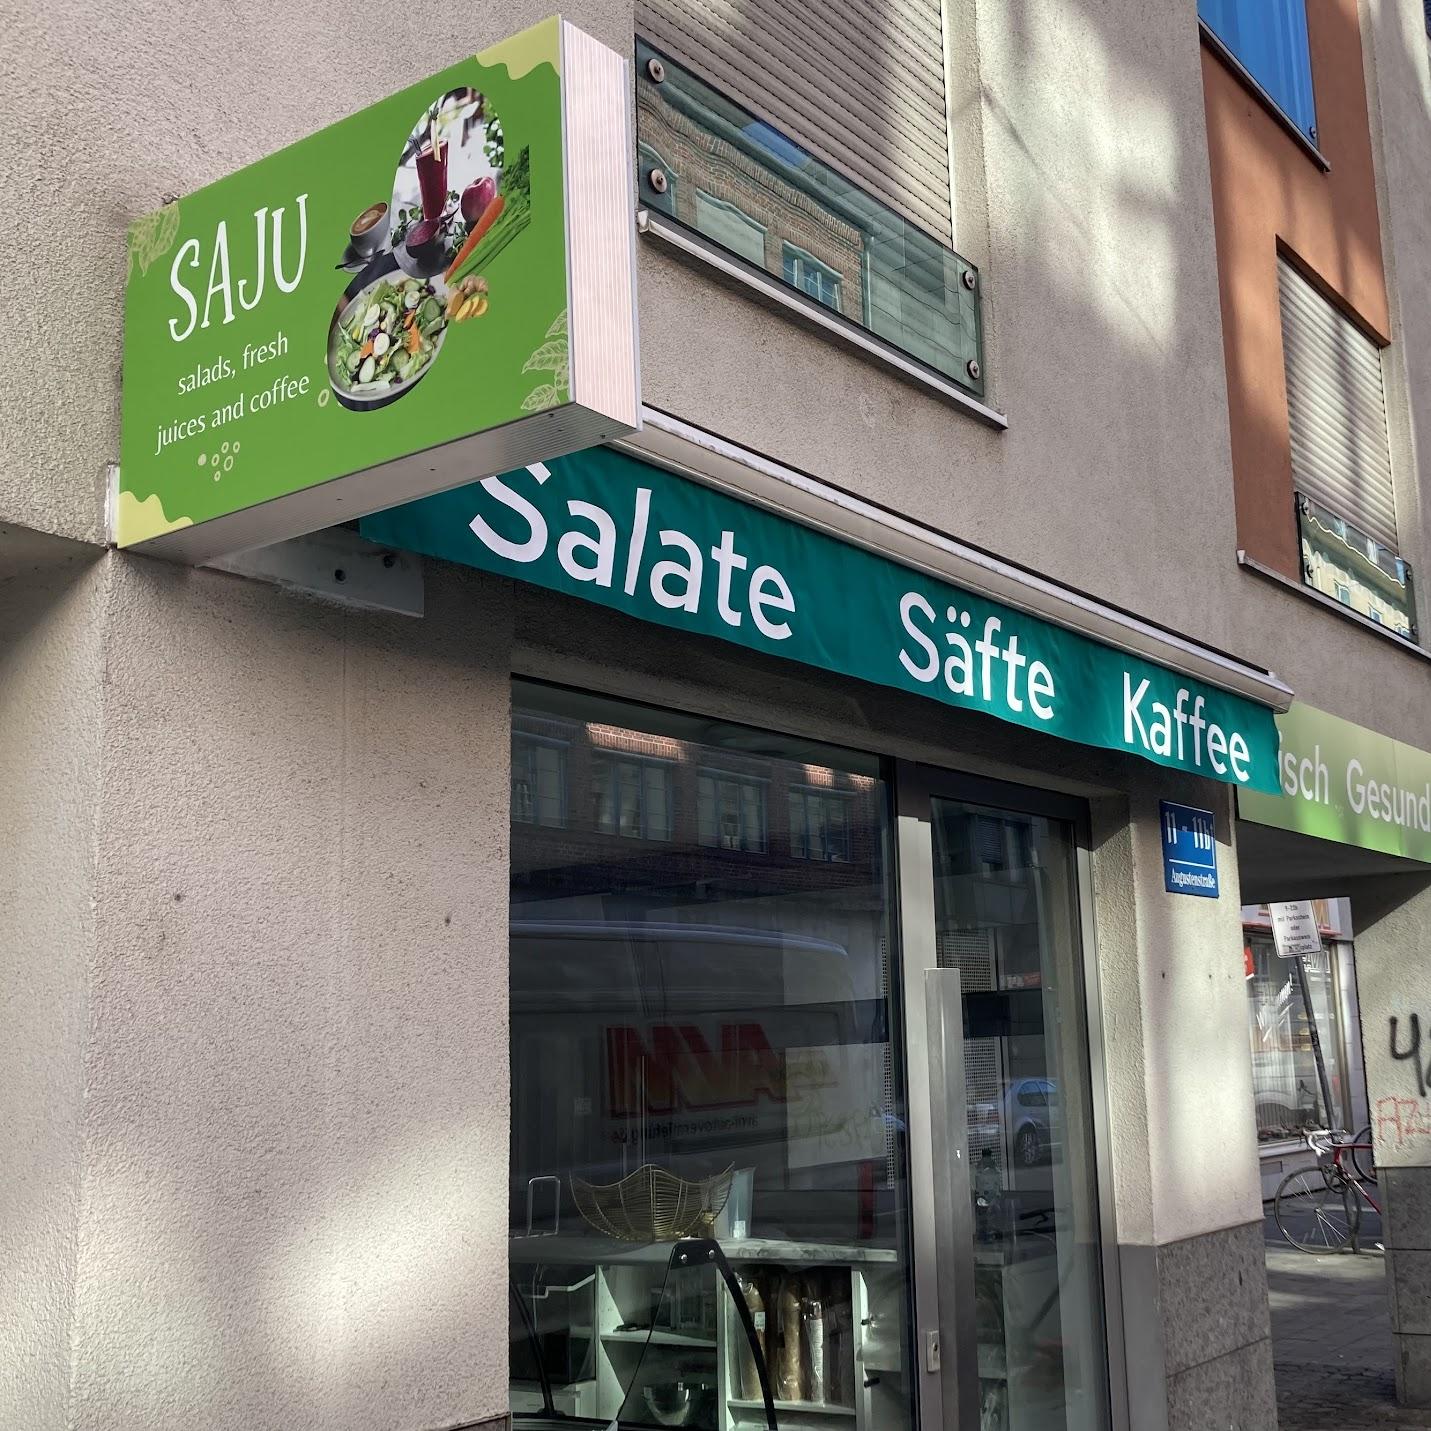 Restaurant "SAJU Salad & Juice" in München